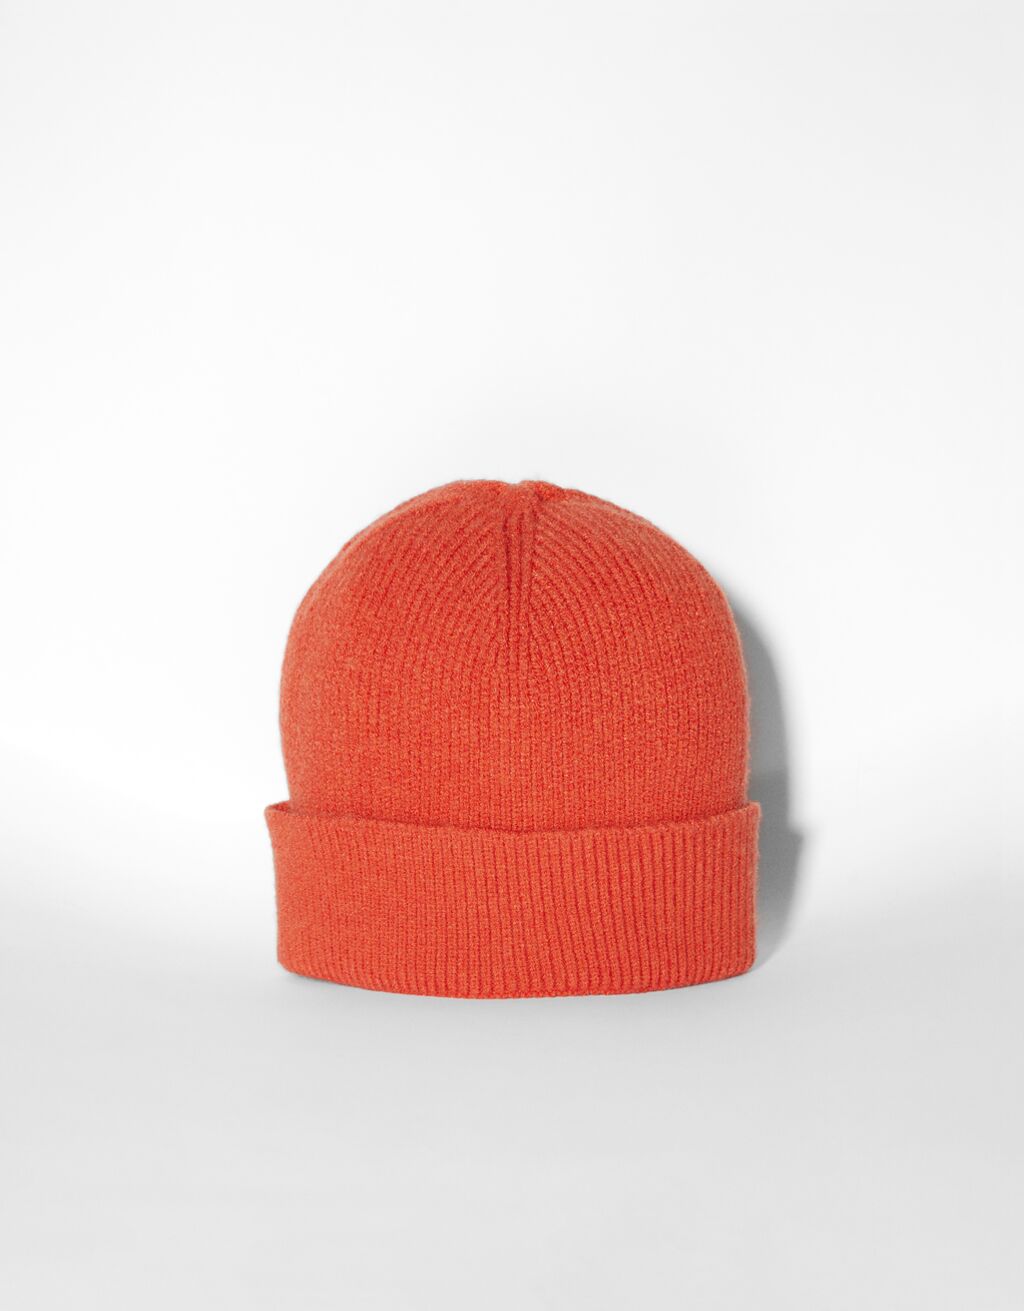 sconto 50% MODA DONNA Accessori Cappello e berretto Arancione Bershka Cappello e berretto Arancione Unica 